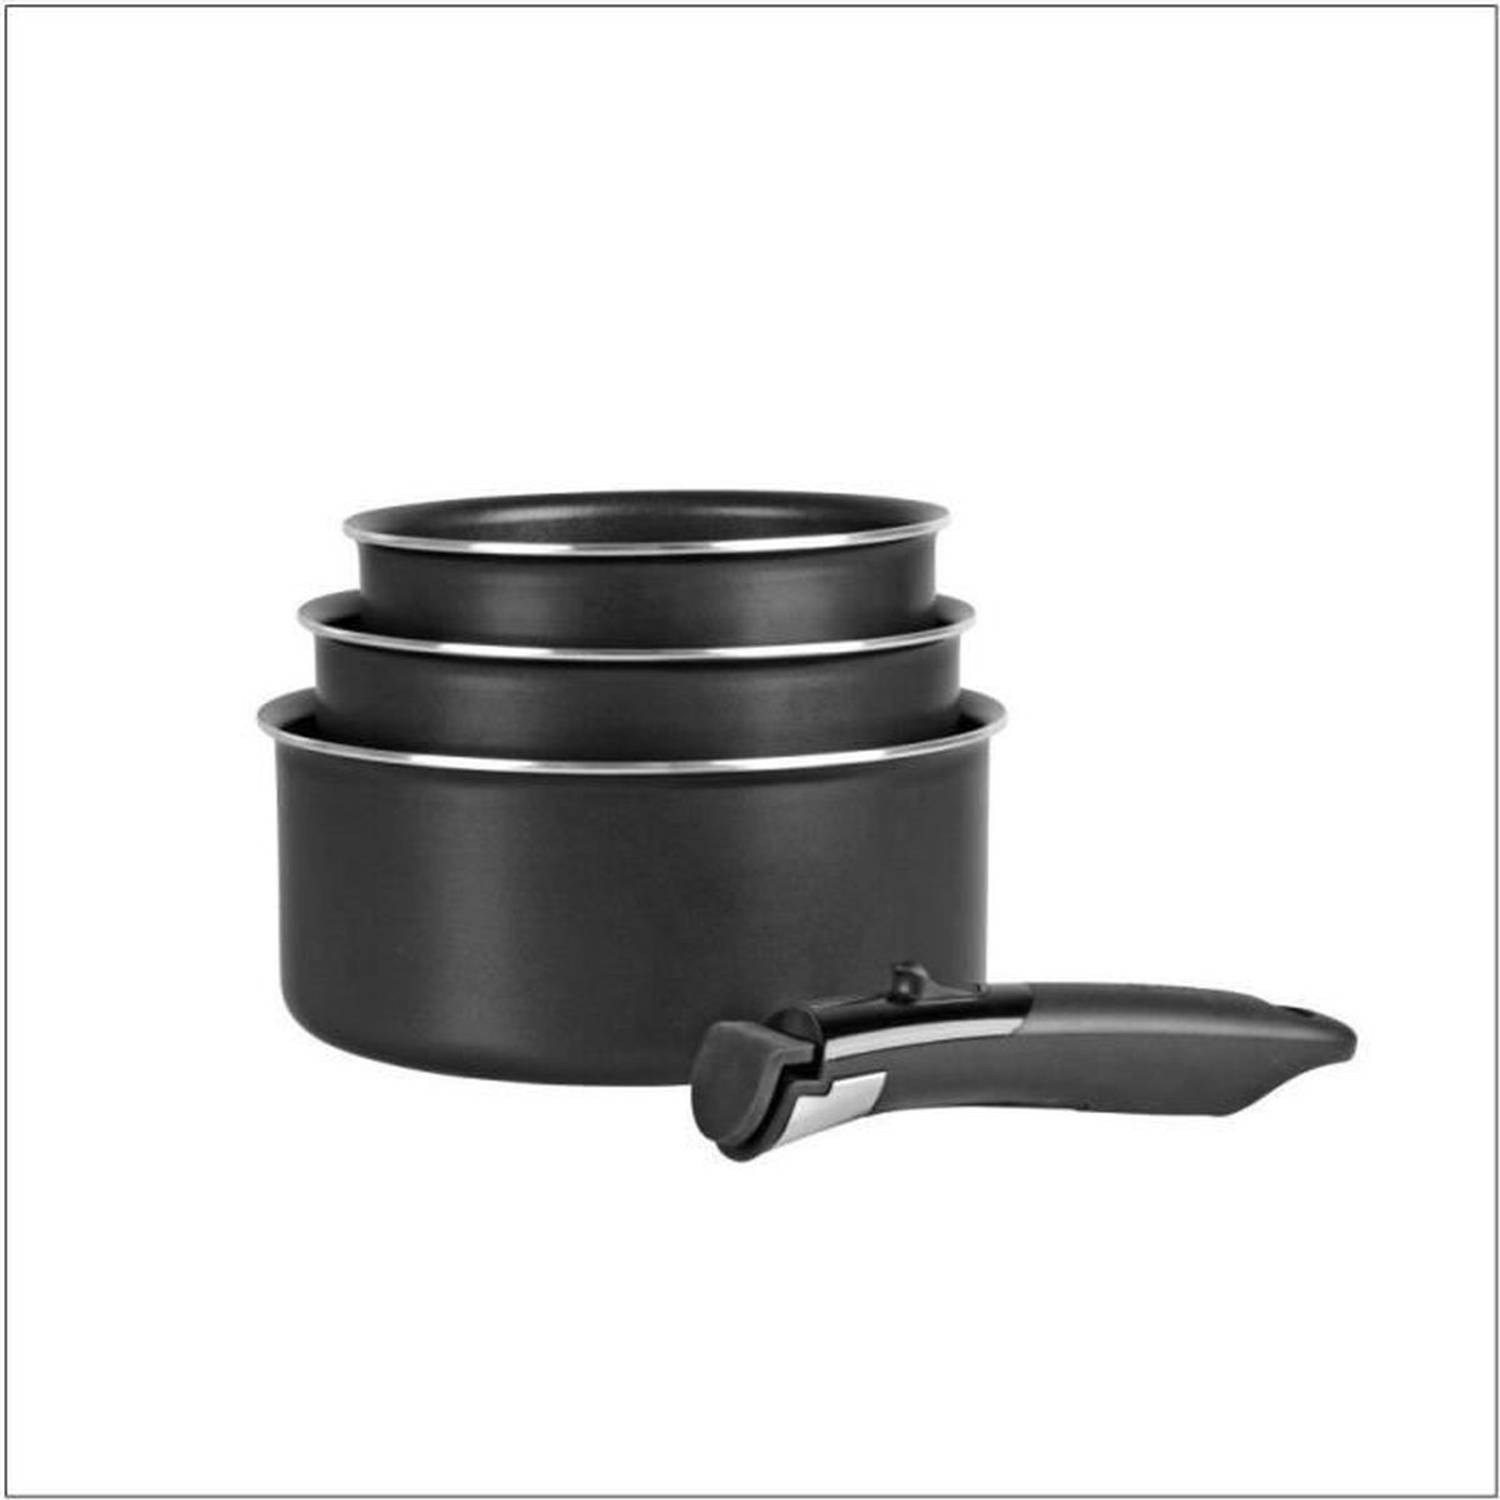 SITRAMOVIBLE BLACK PEPPER - 713775 - 3 potten - Alle kookplaten inclusief inductie